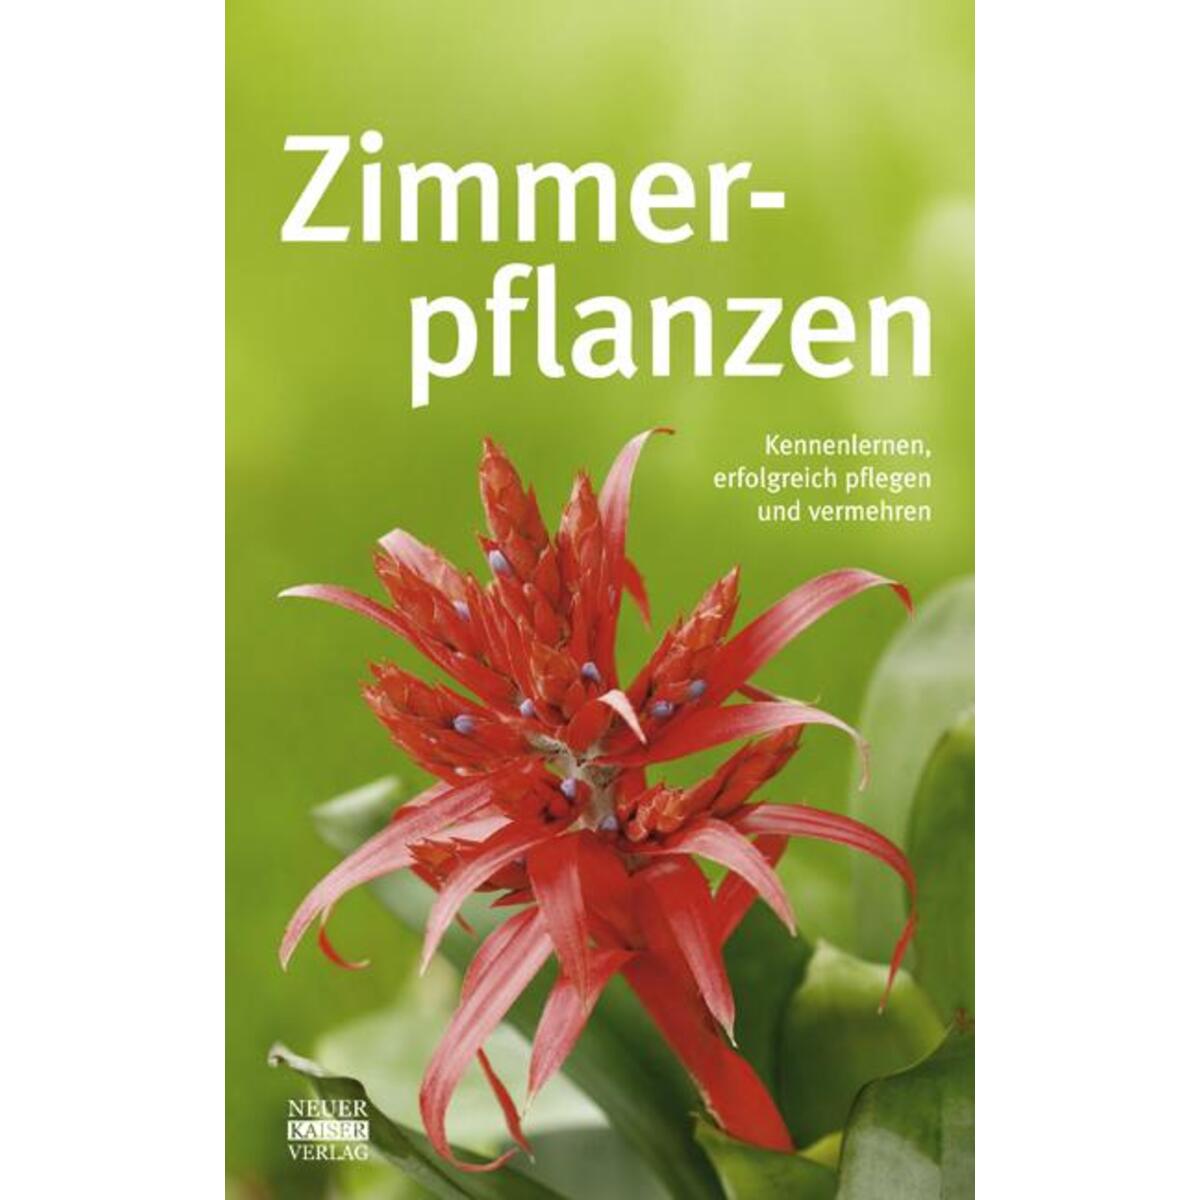 Zimmerpflanzen von Neuer Kaiser Verlag